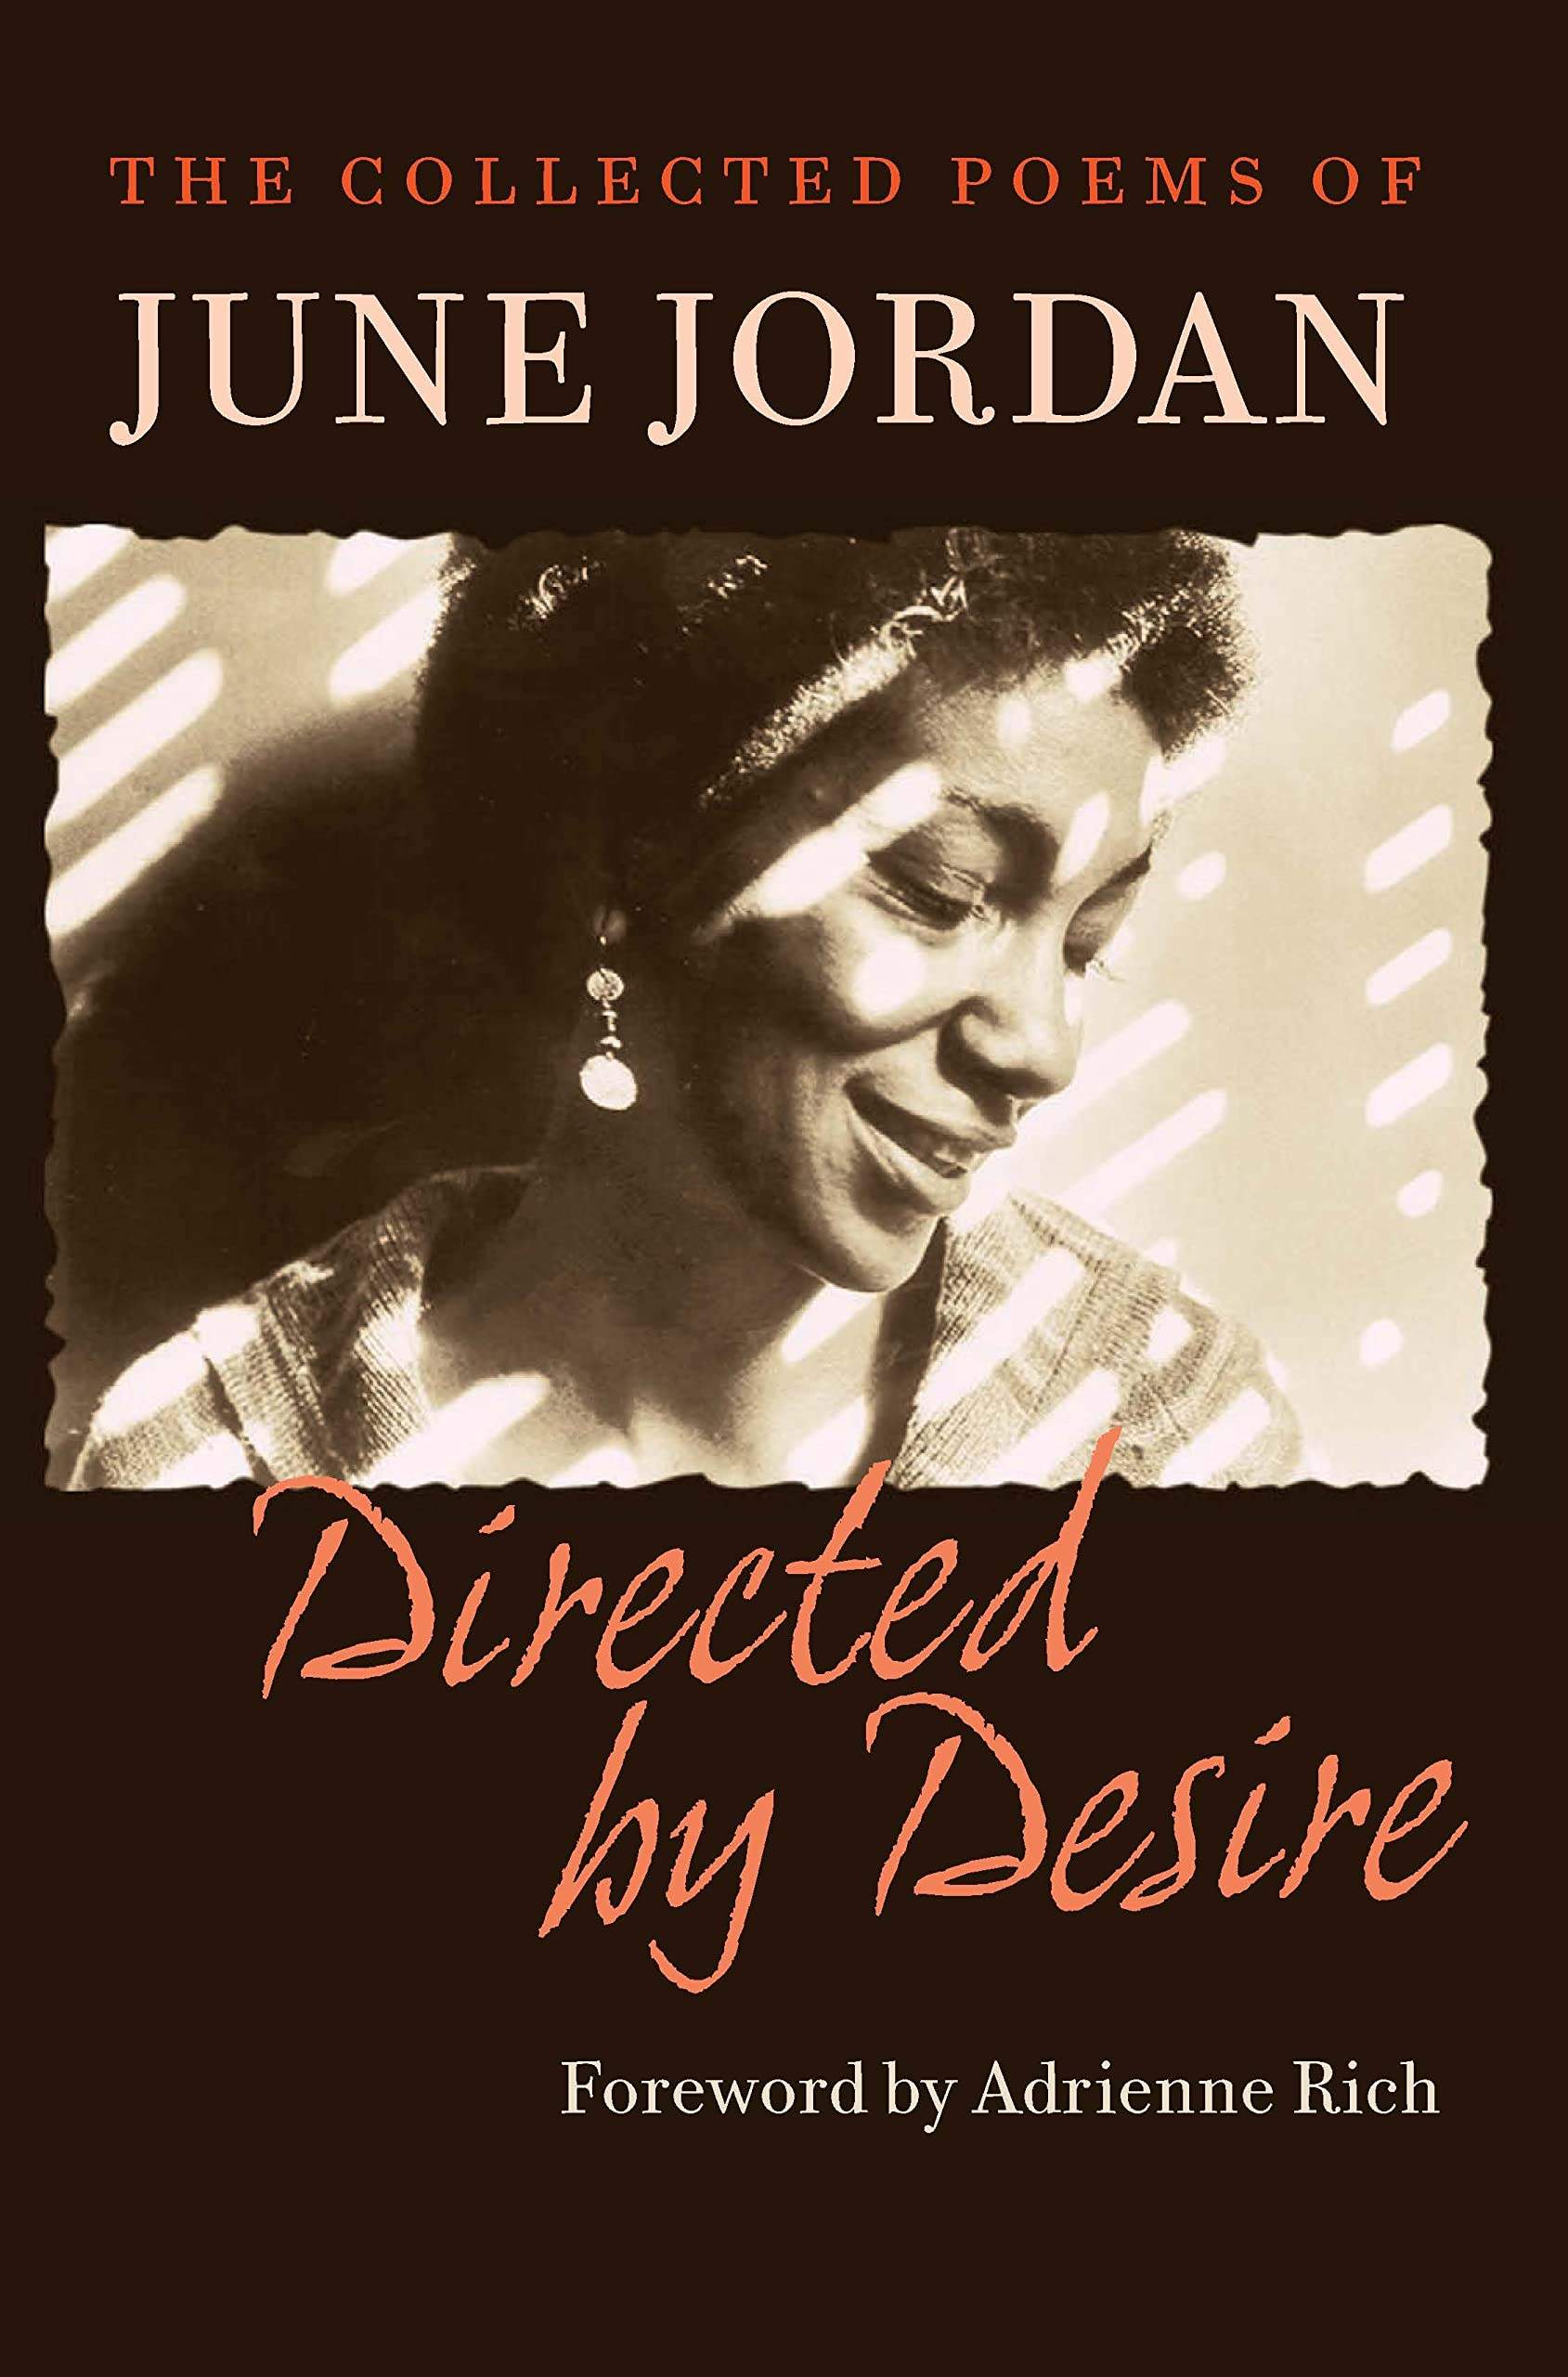 Copertina di "Directed by Desire. The Collected Poems" di June Jordan